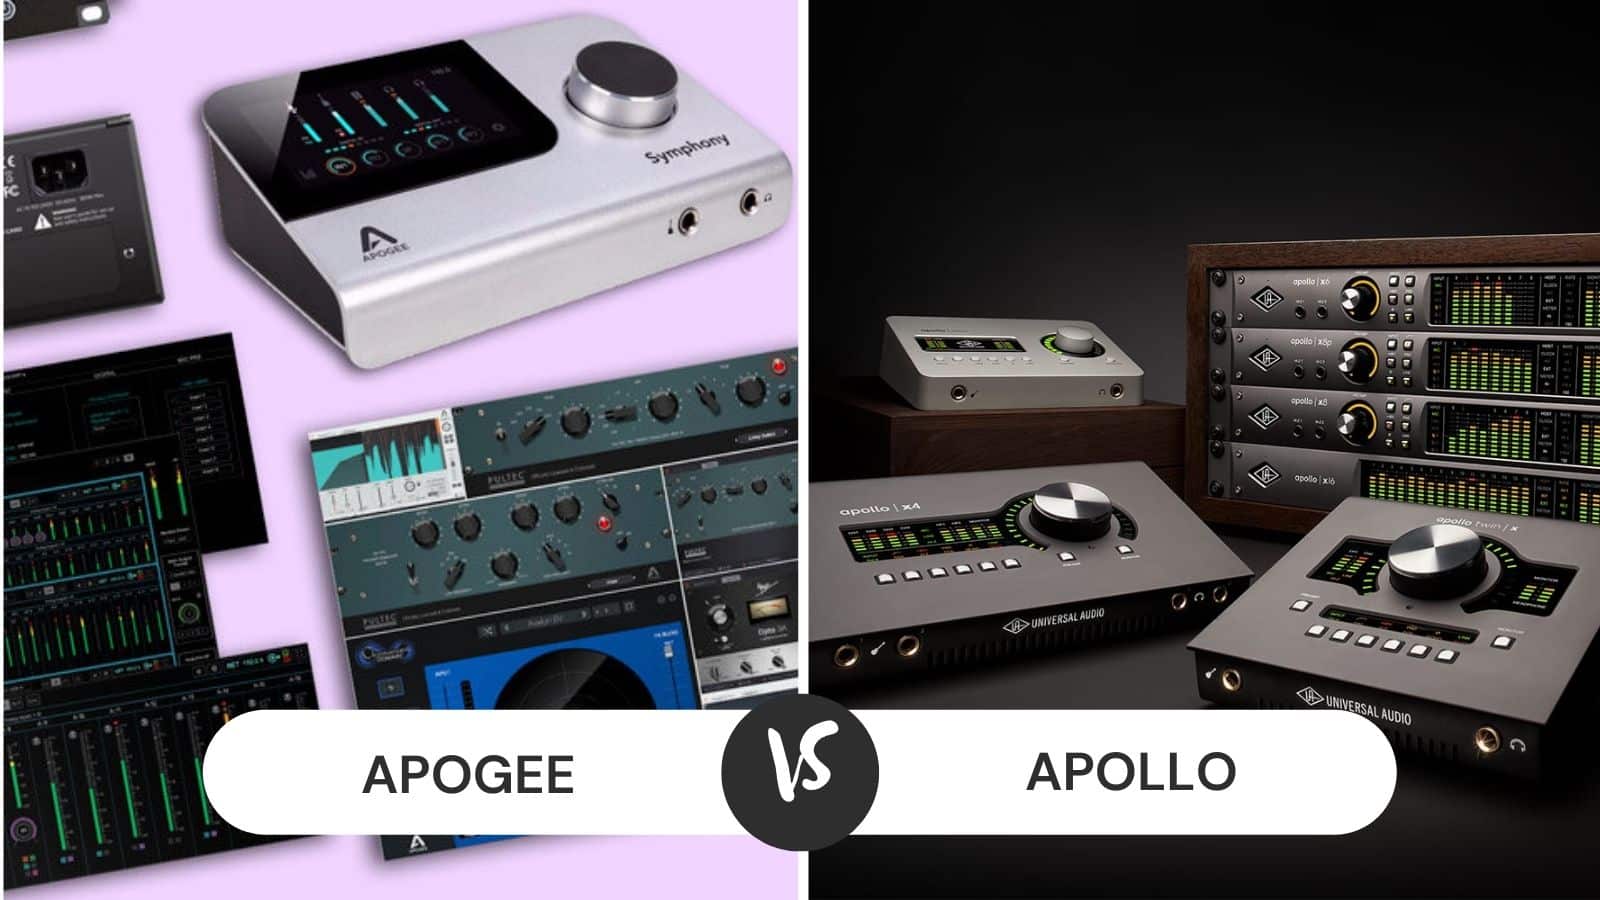 Apogee vs Apollo